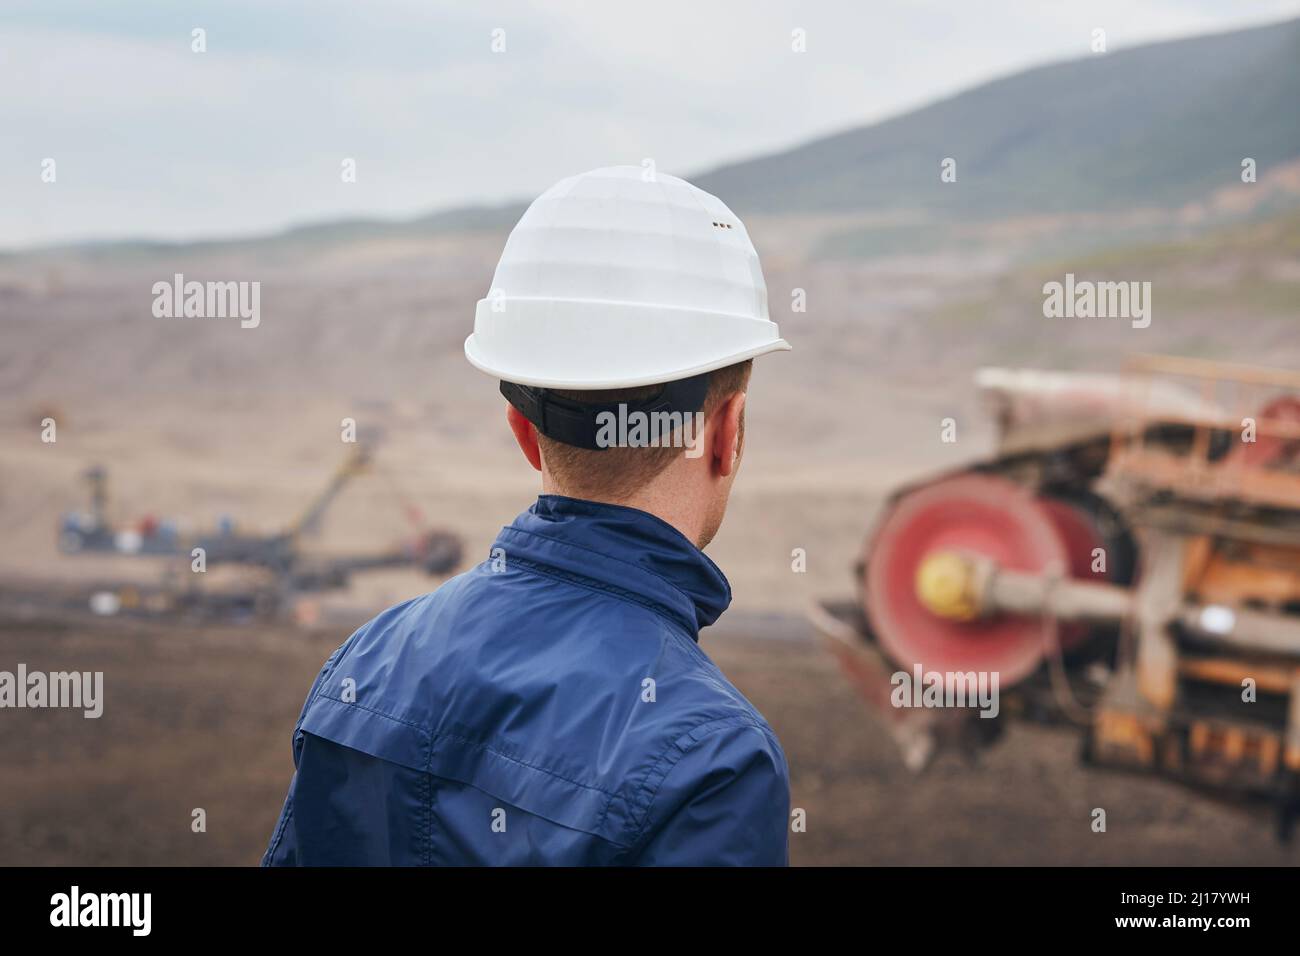 Extracción de carbón en mina de superficie. Minero mirando la enorme excavadora. Foto de stock